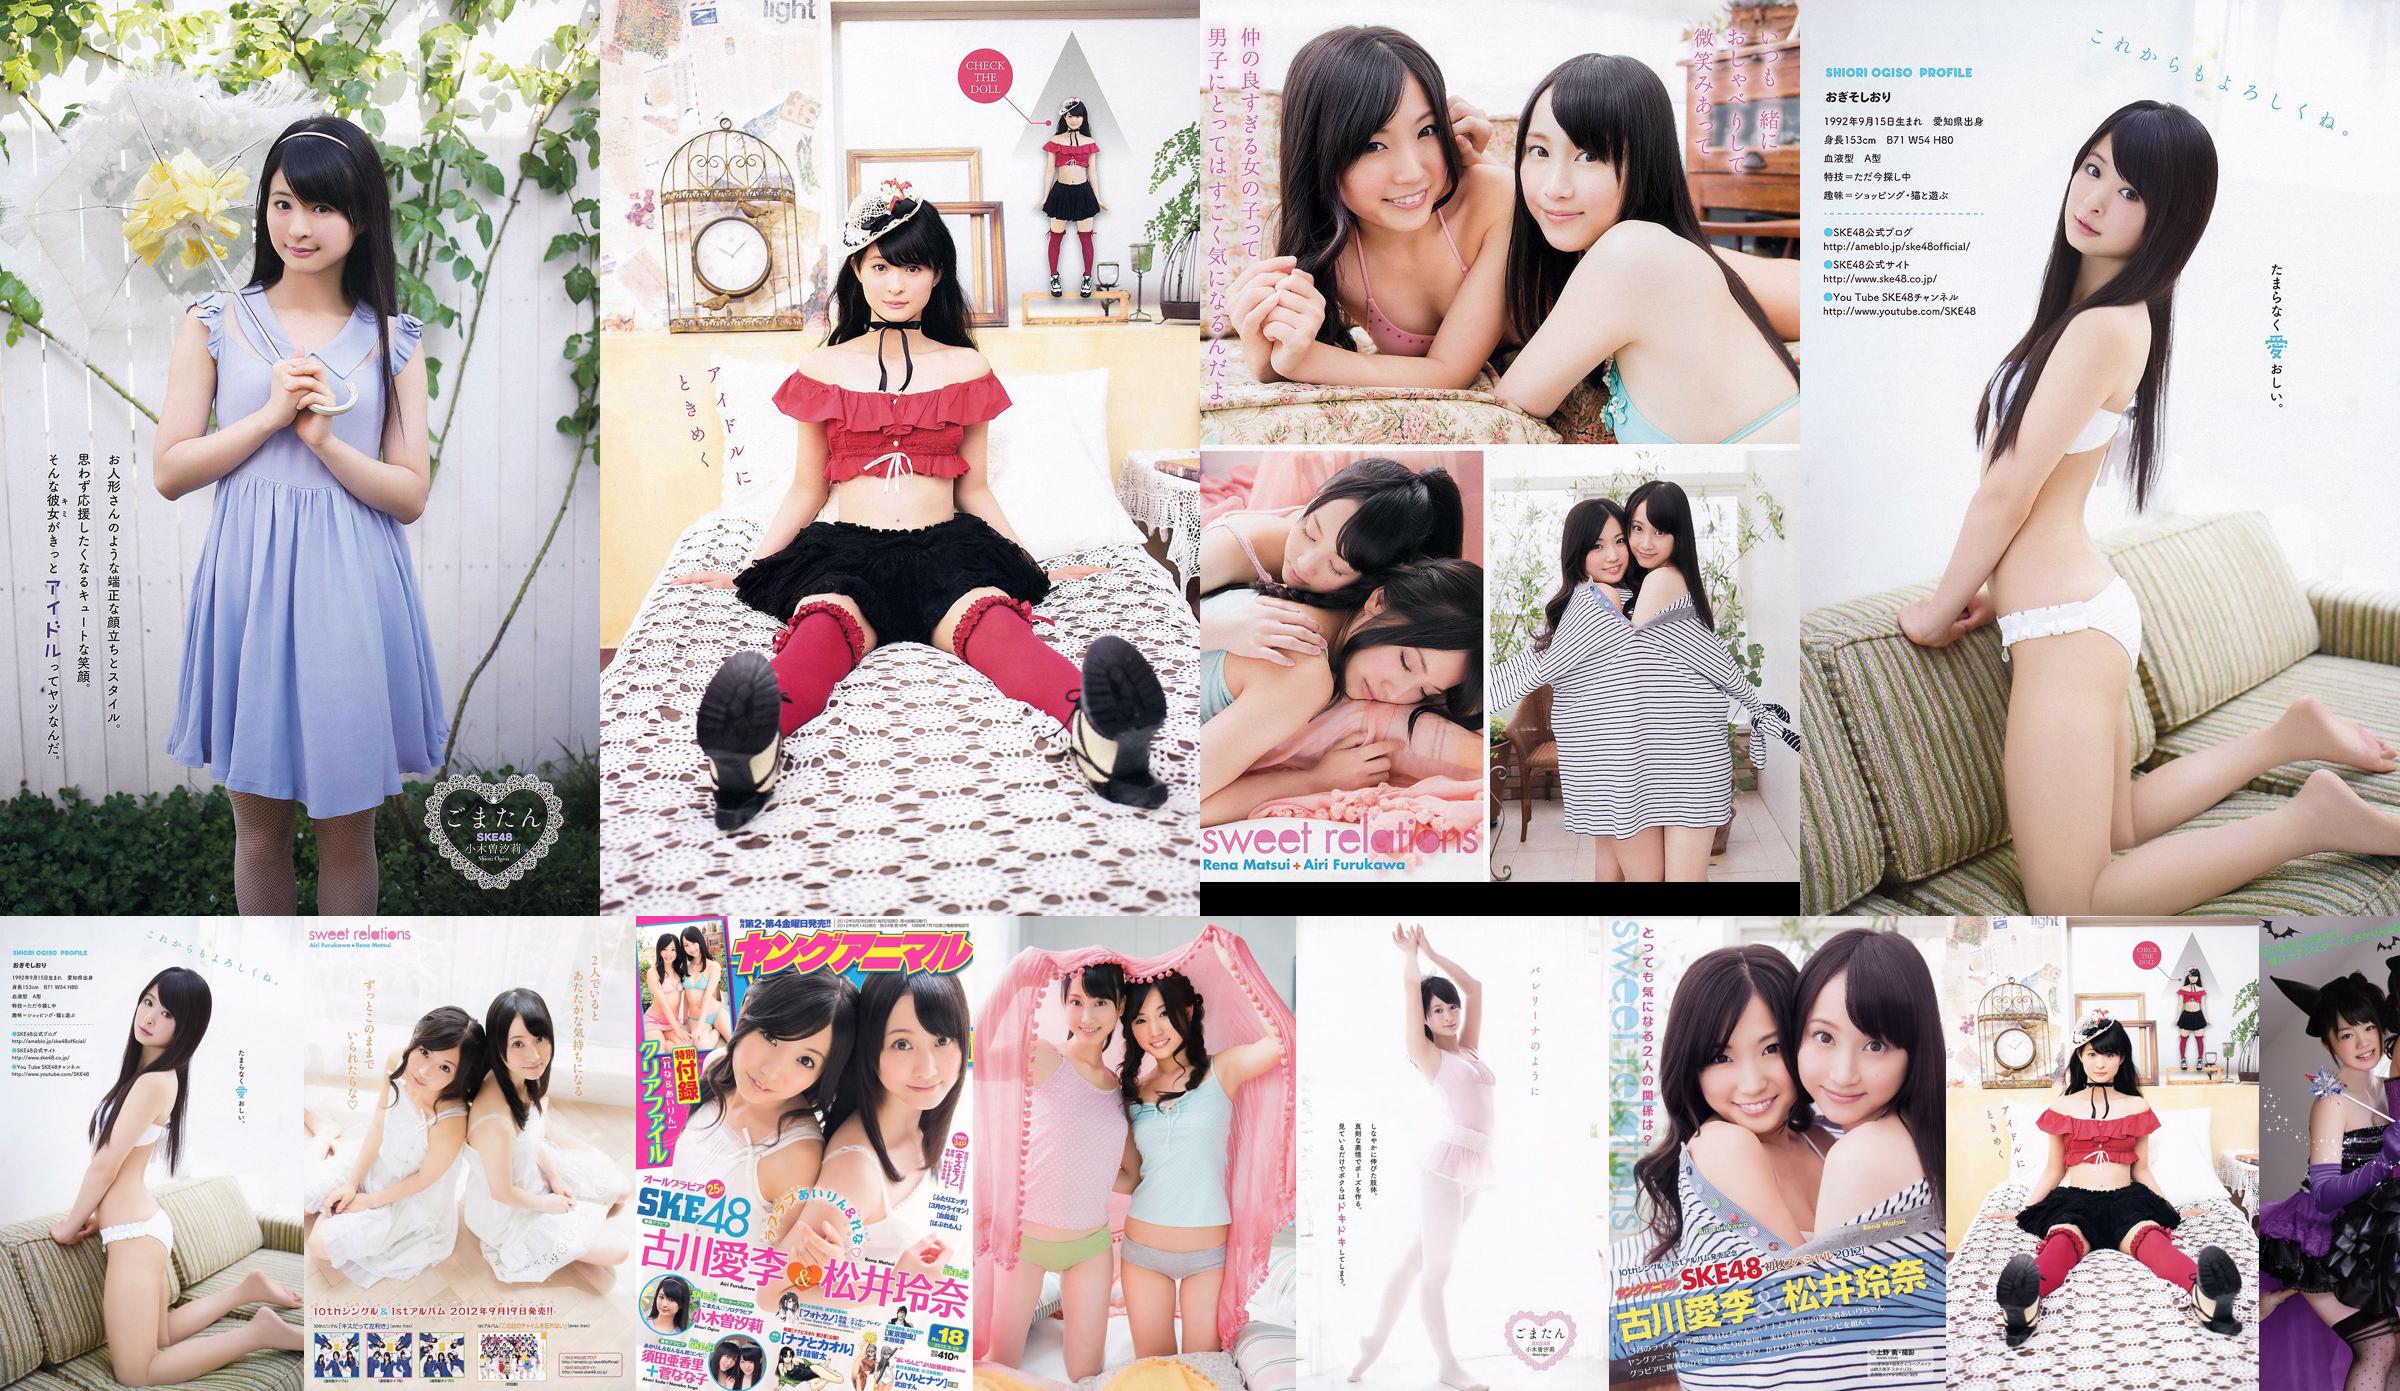 Ai Li Furukawa, Rena Matsui, Sasa Ogi, Aikari Suda [Animal joven] 2012 No.18 Photo Magazine No.54b748 Página 1